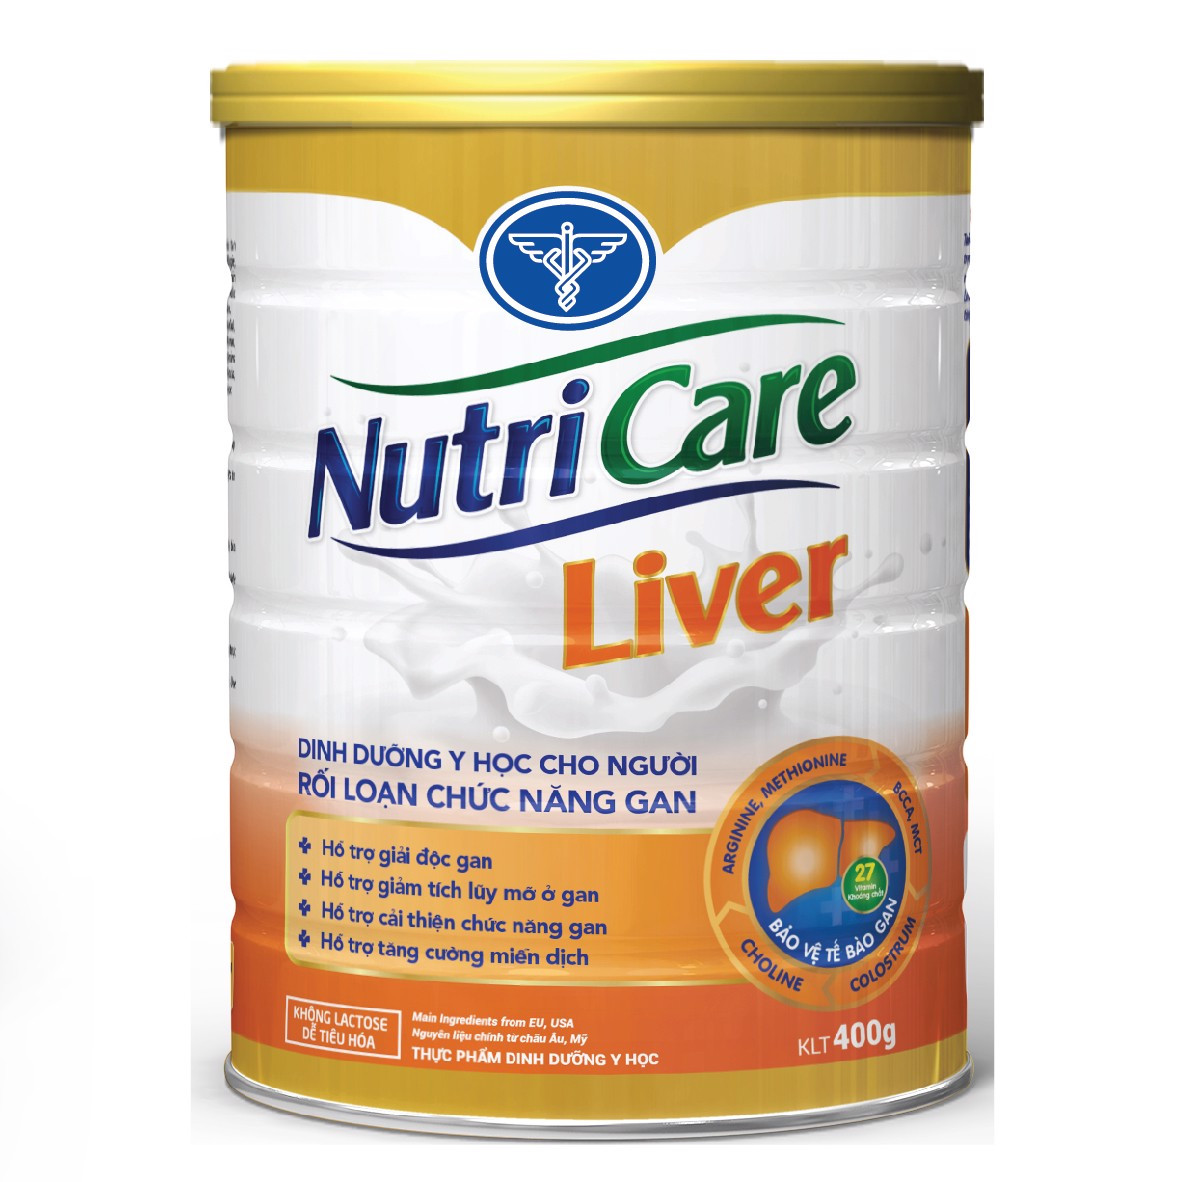 Sữa bột Nutricare Liver cho người rối loạn chức năng gan 400g